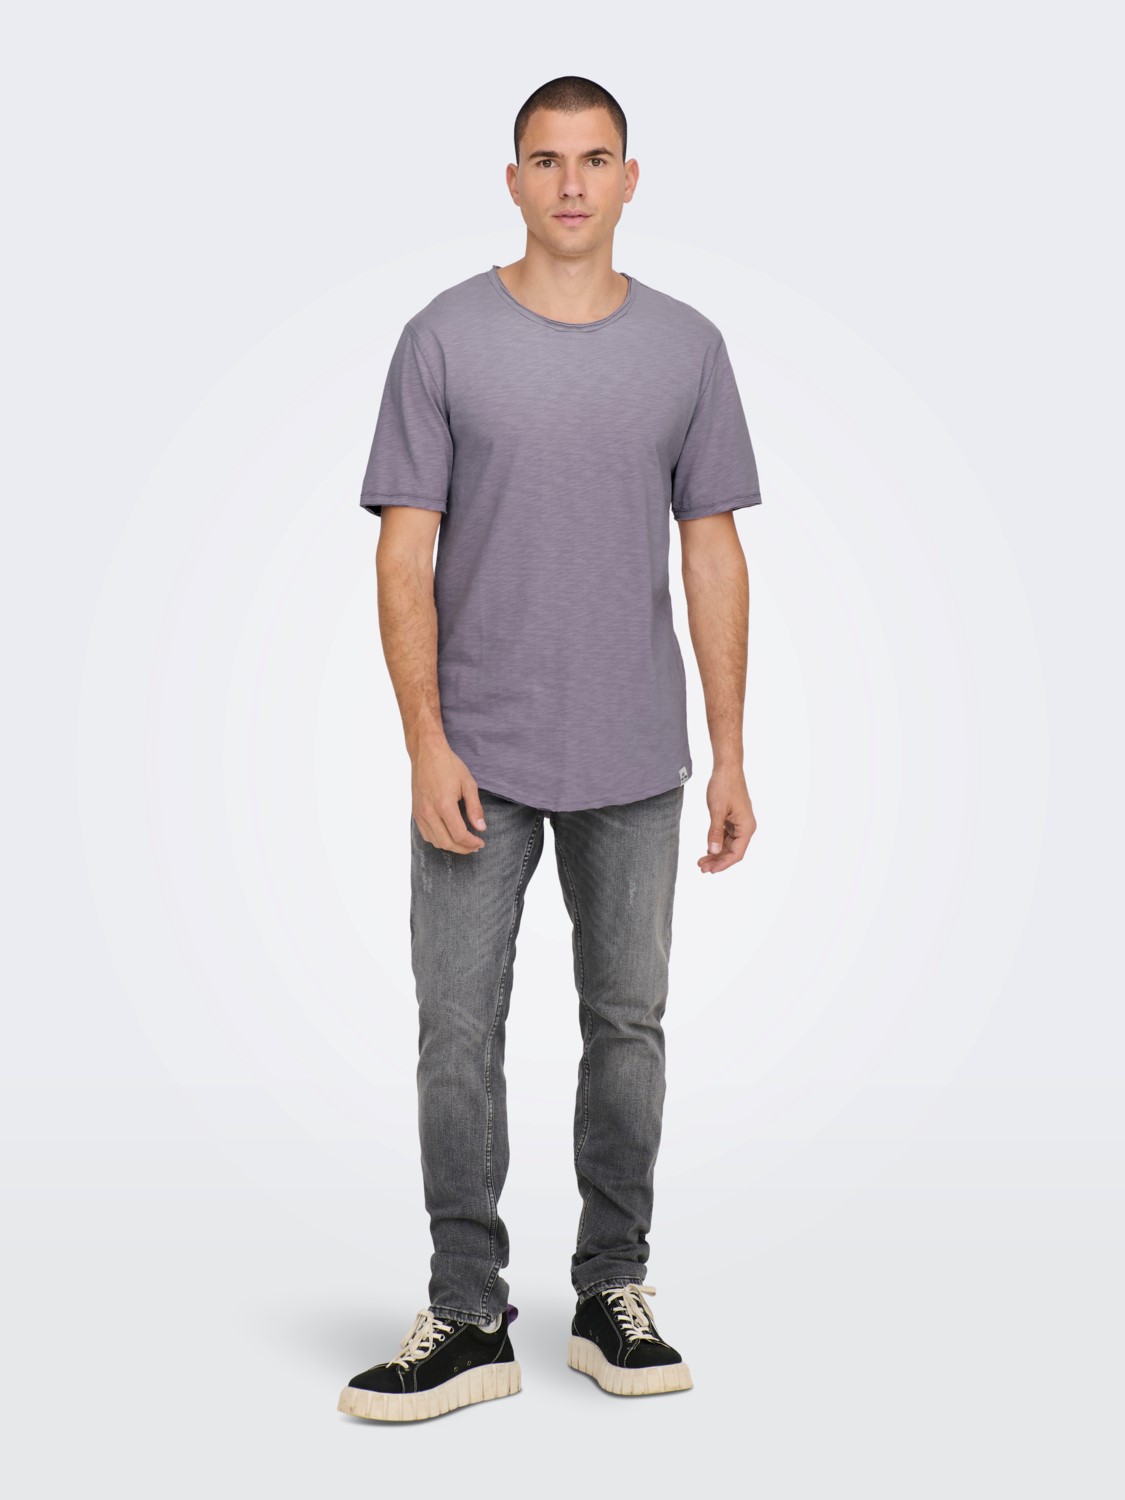 Se Benne Long Line Fit T-Shirt S/S - Purple Ash X-Large hos monomen